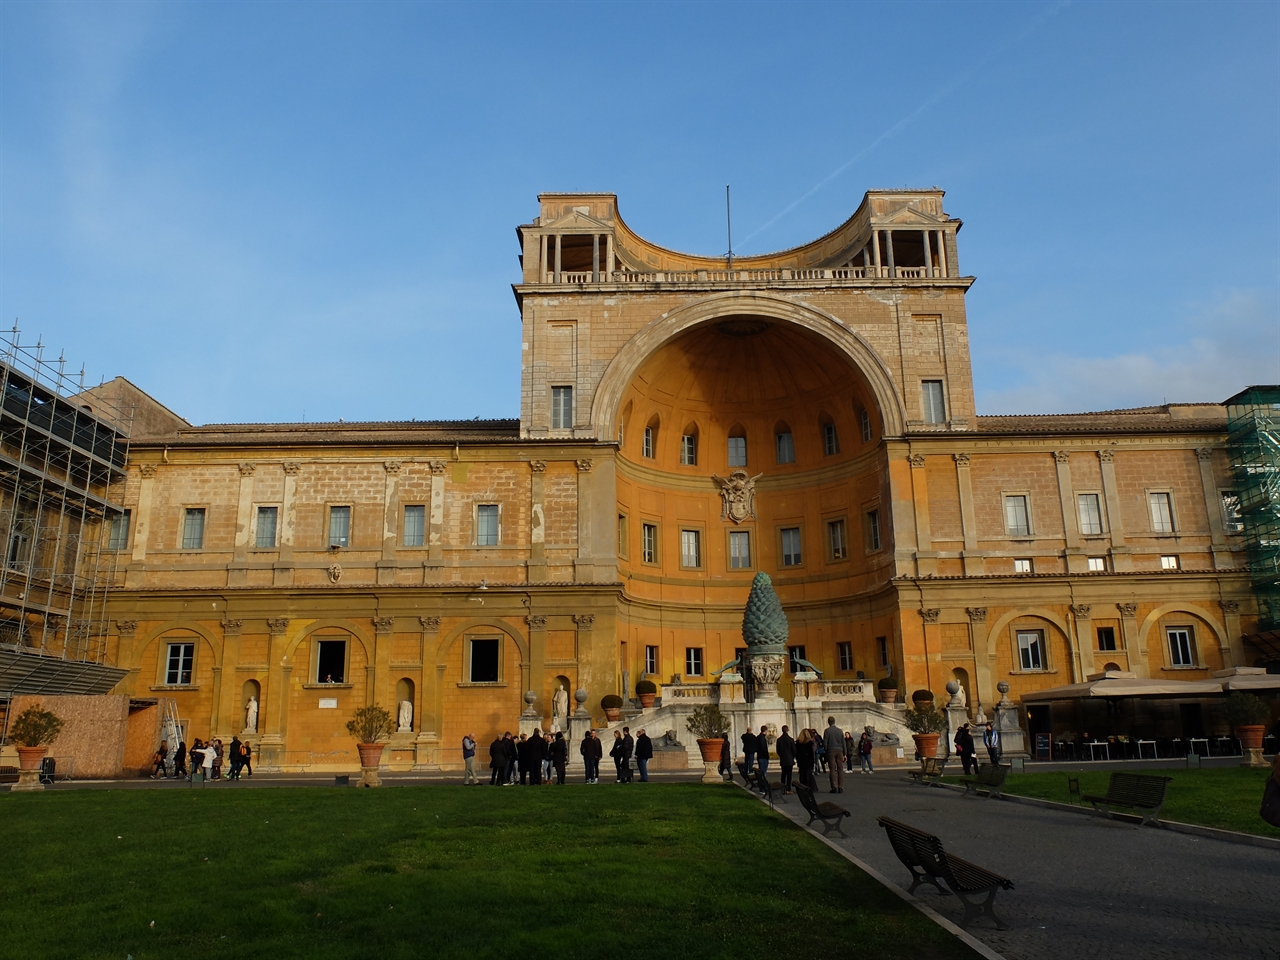 바티칸 박물관 회화관에서 나와 거대한 솔방울의 분수가 인상적인 피냐의 안뜰에서 잠시 햇빛을 쬡니다. 